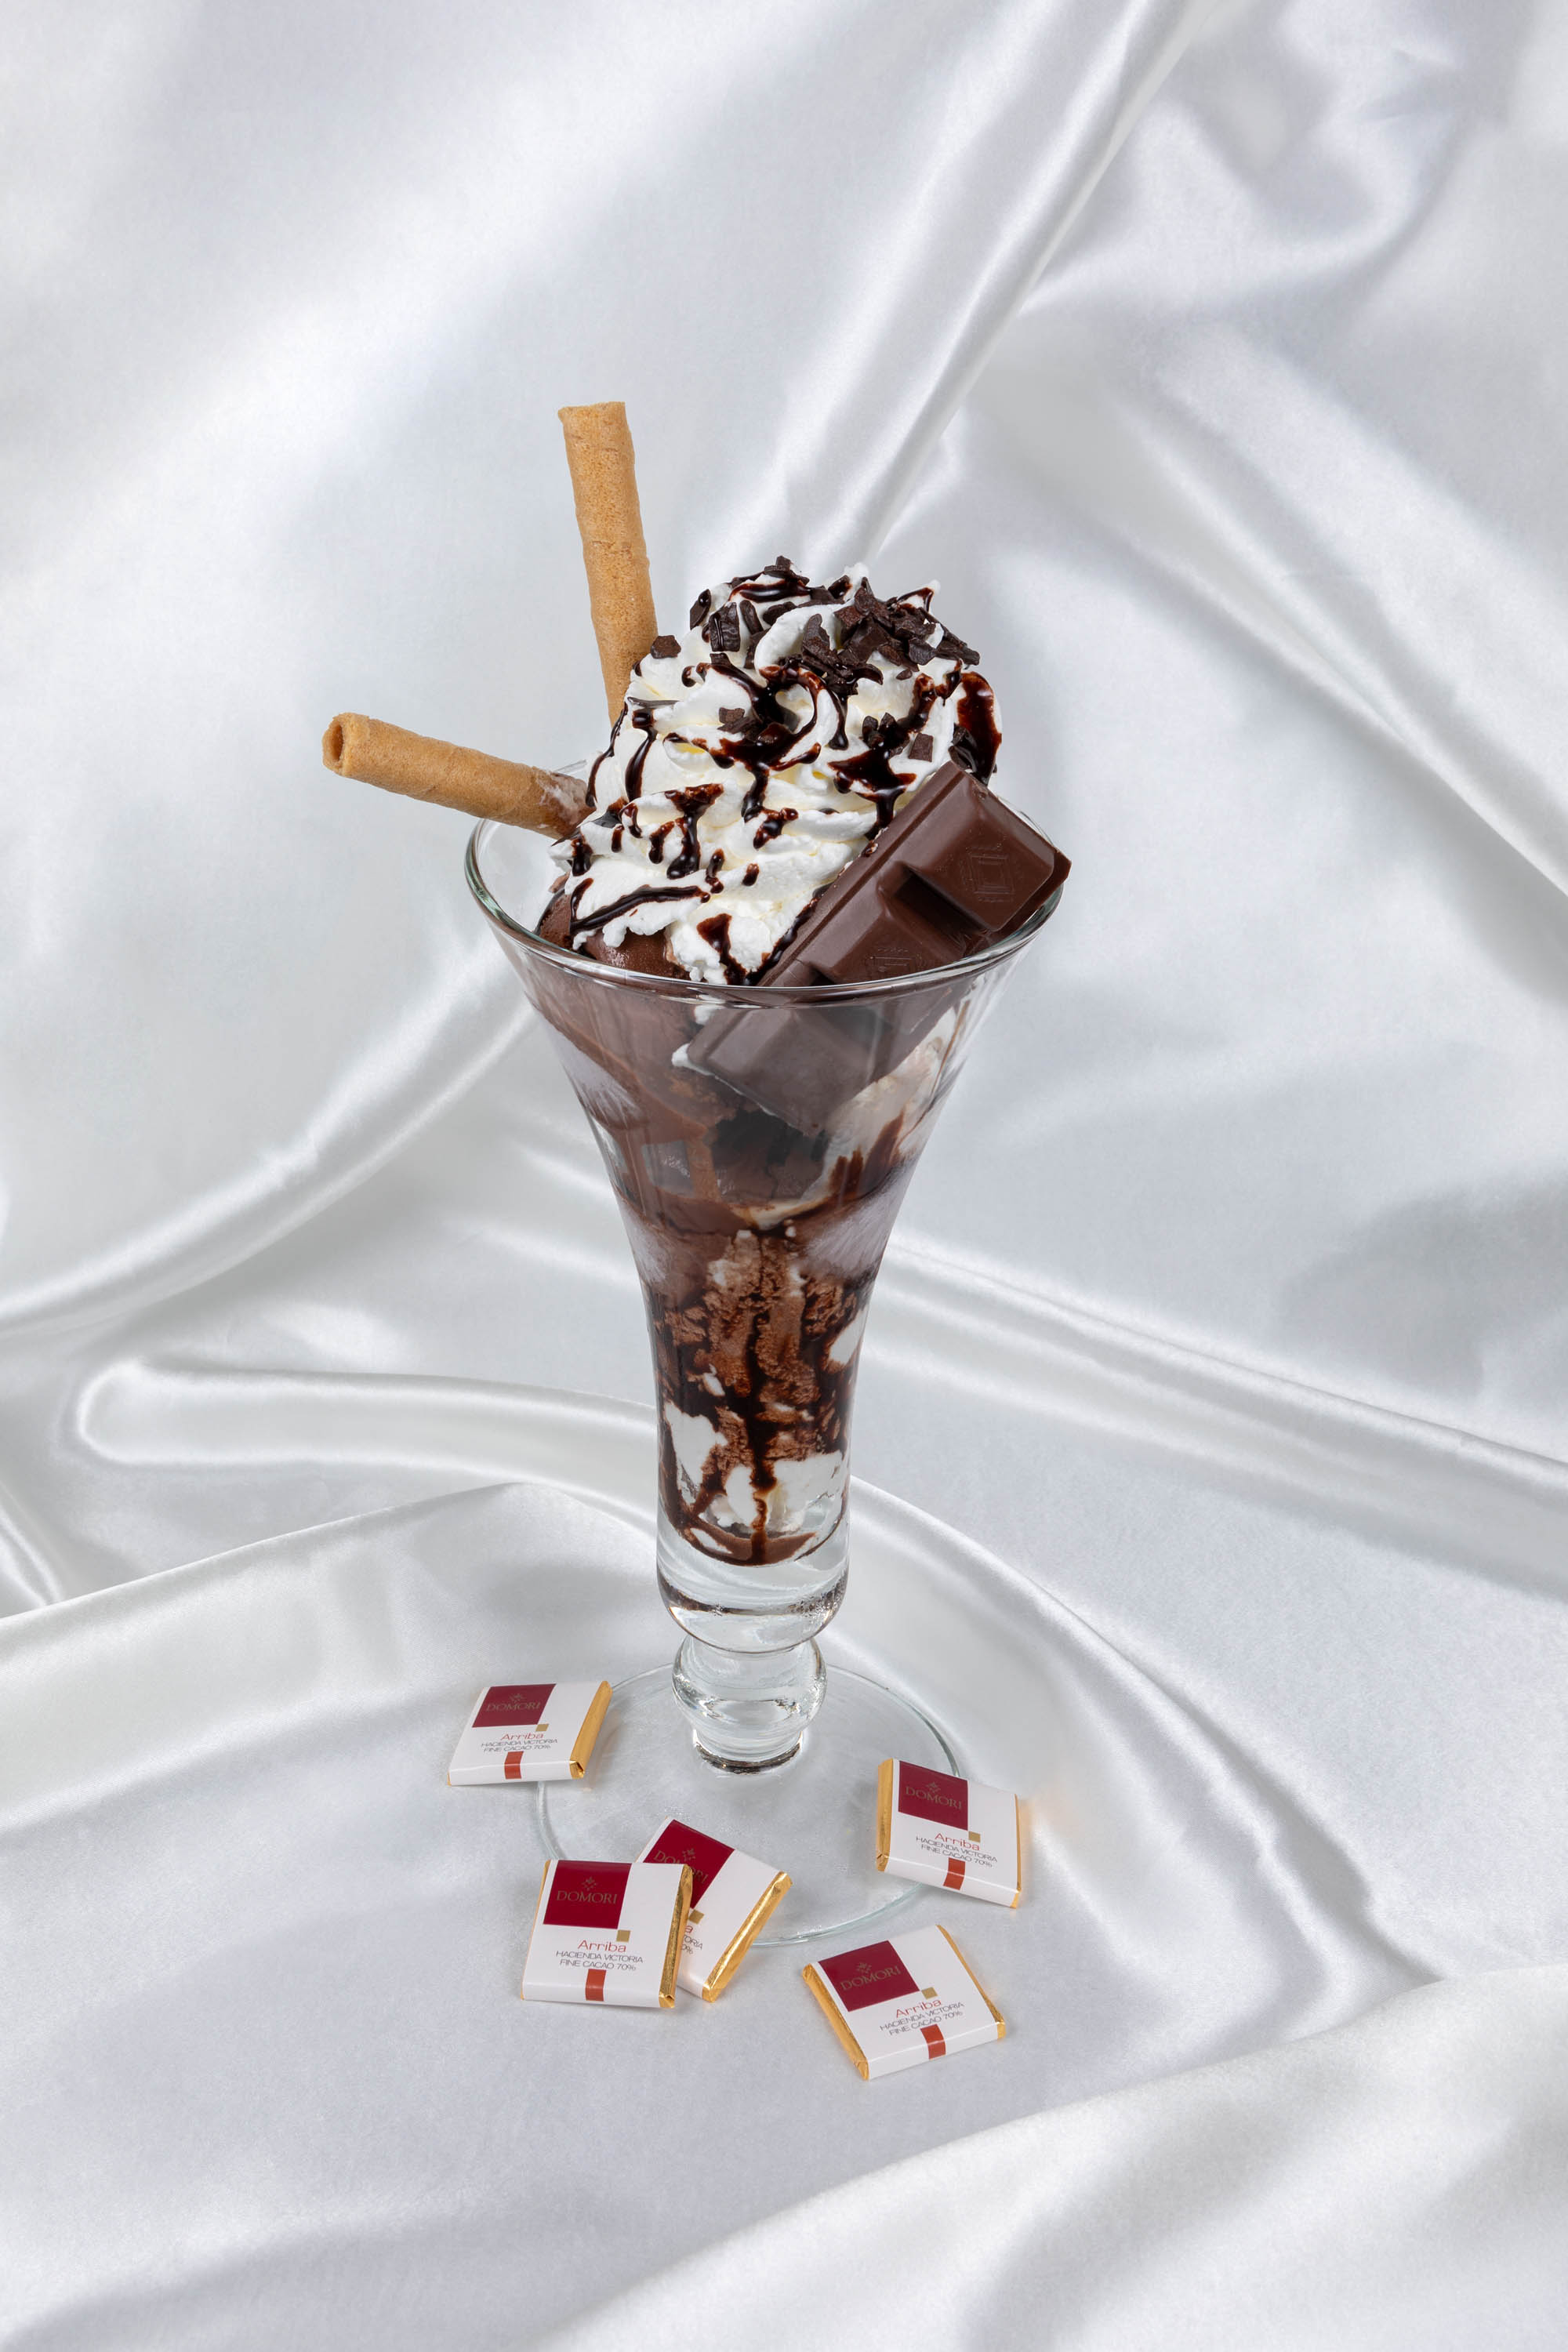 foto di una coppa gelato alla cioccolata con drappo in seta bianca sullo sfondo